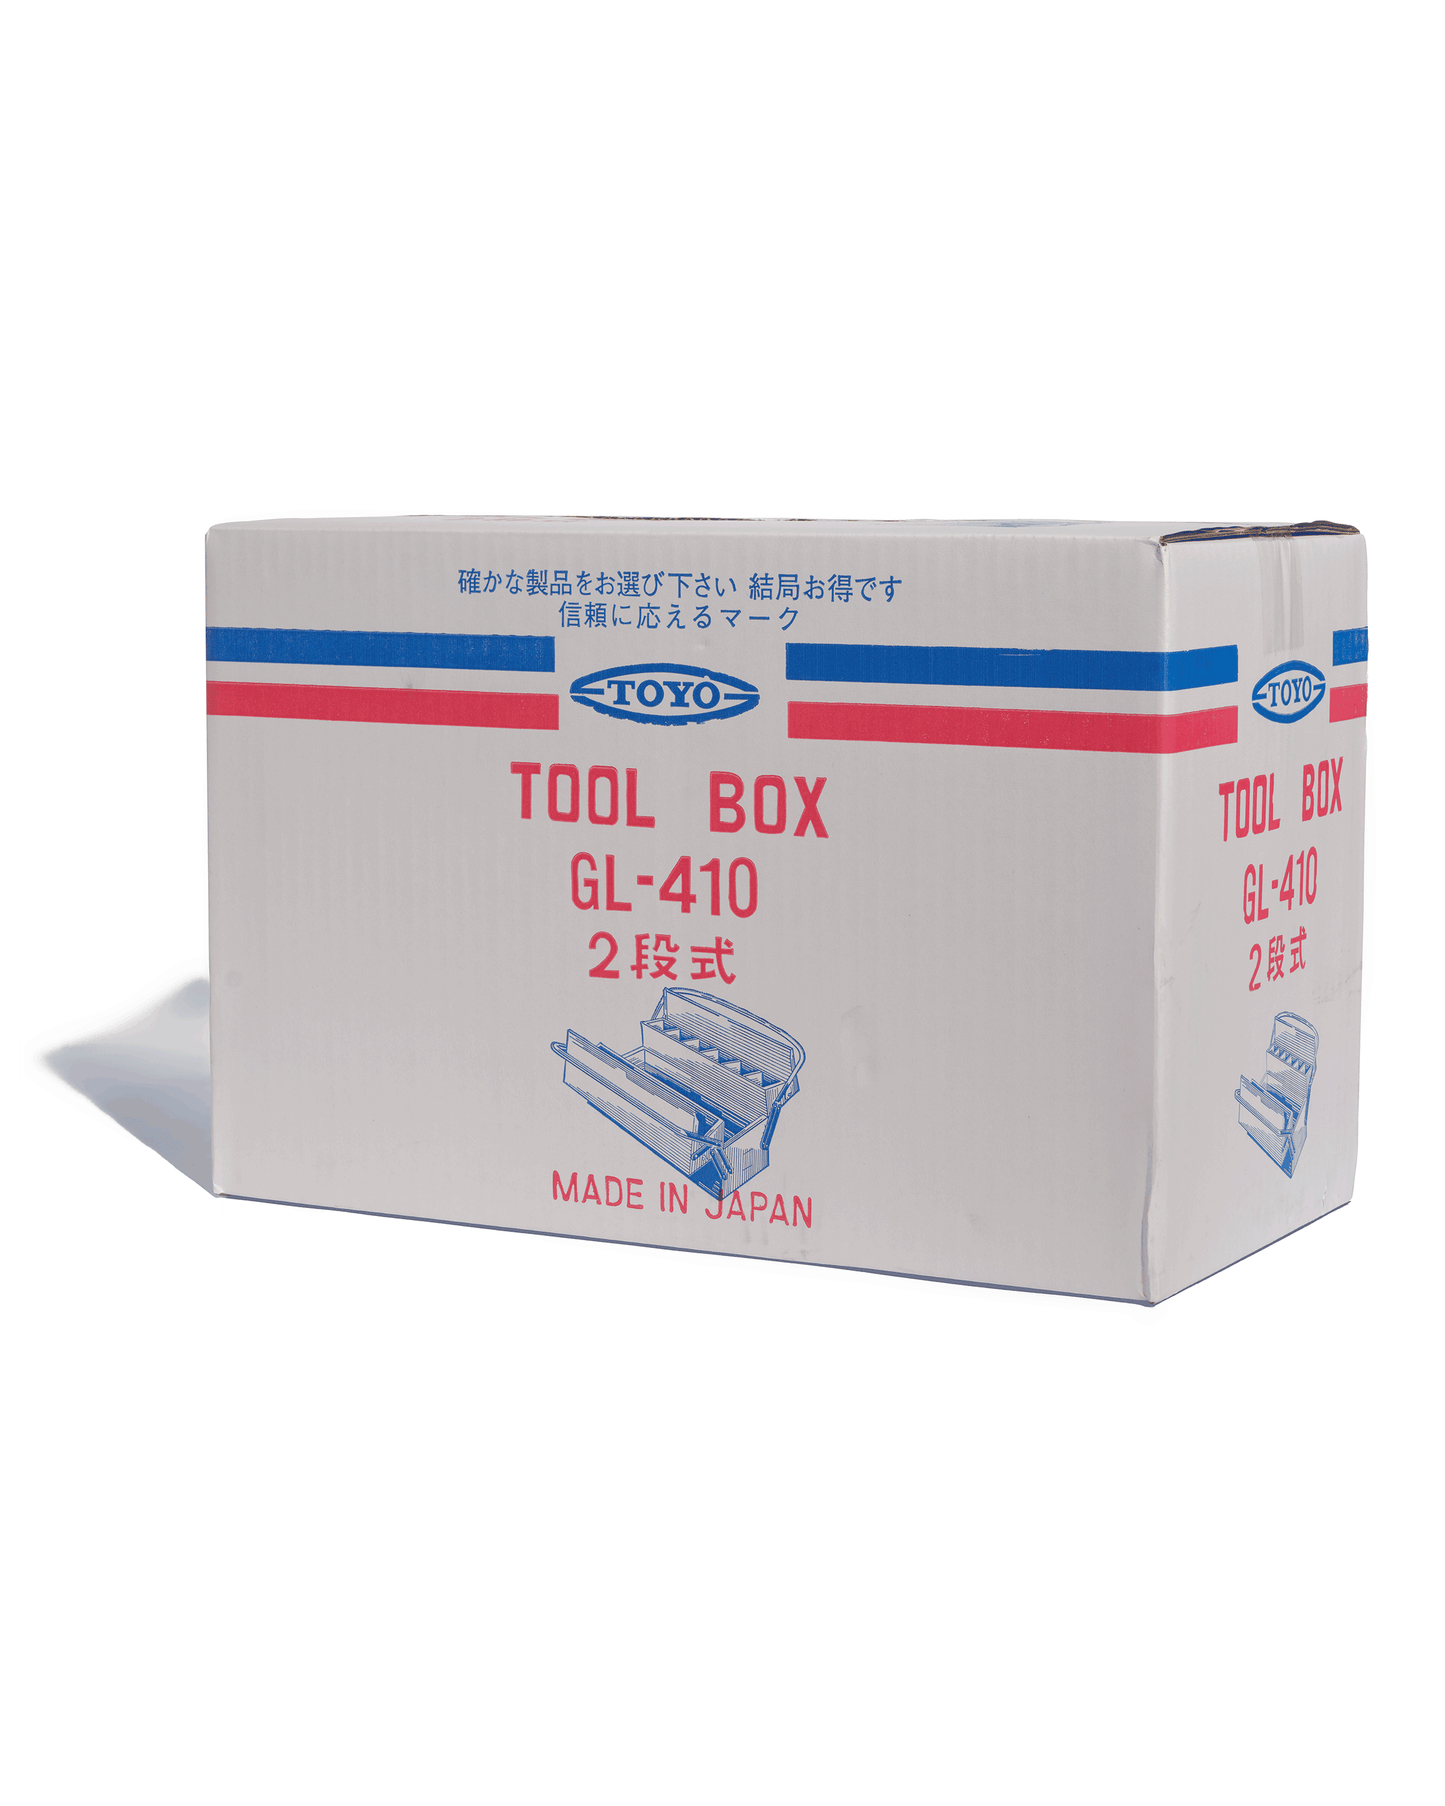 Toyo Steel GL-410 Large Tool Box